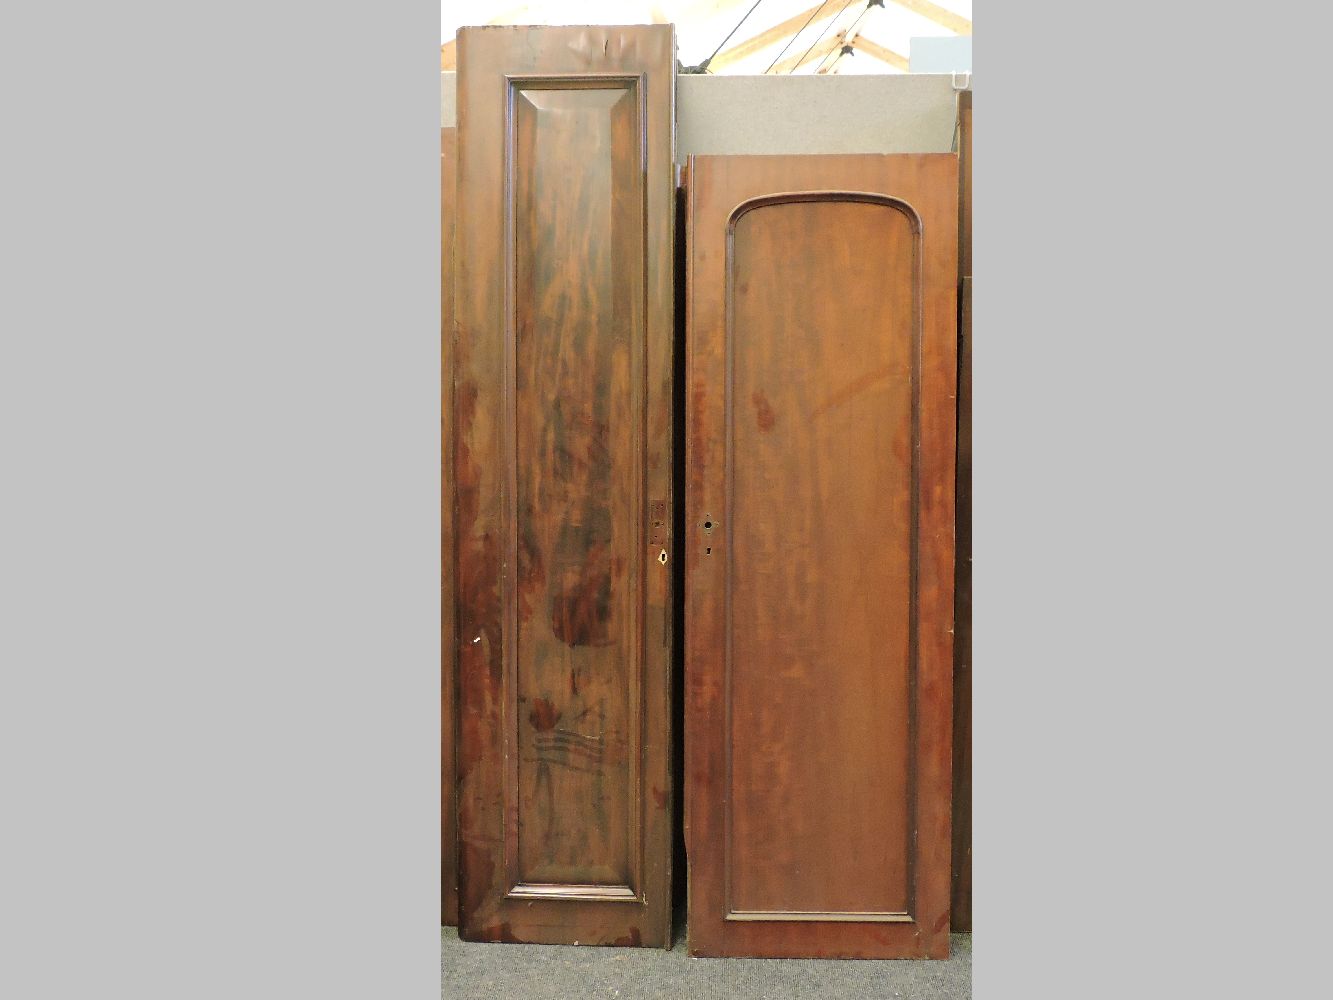 High mahogany panelled doors